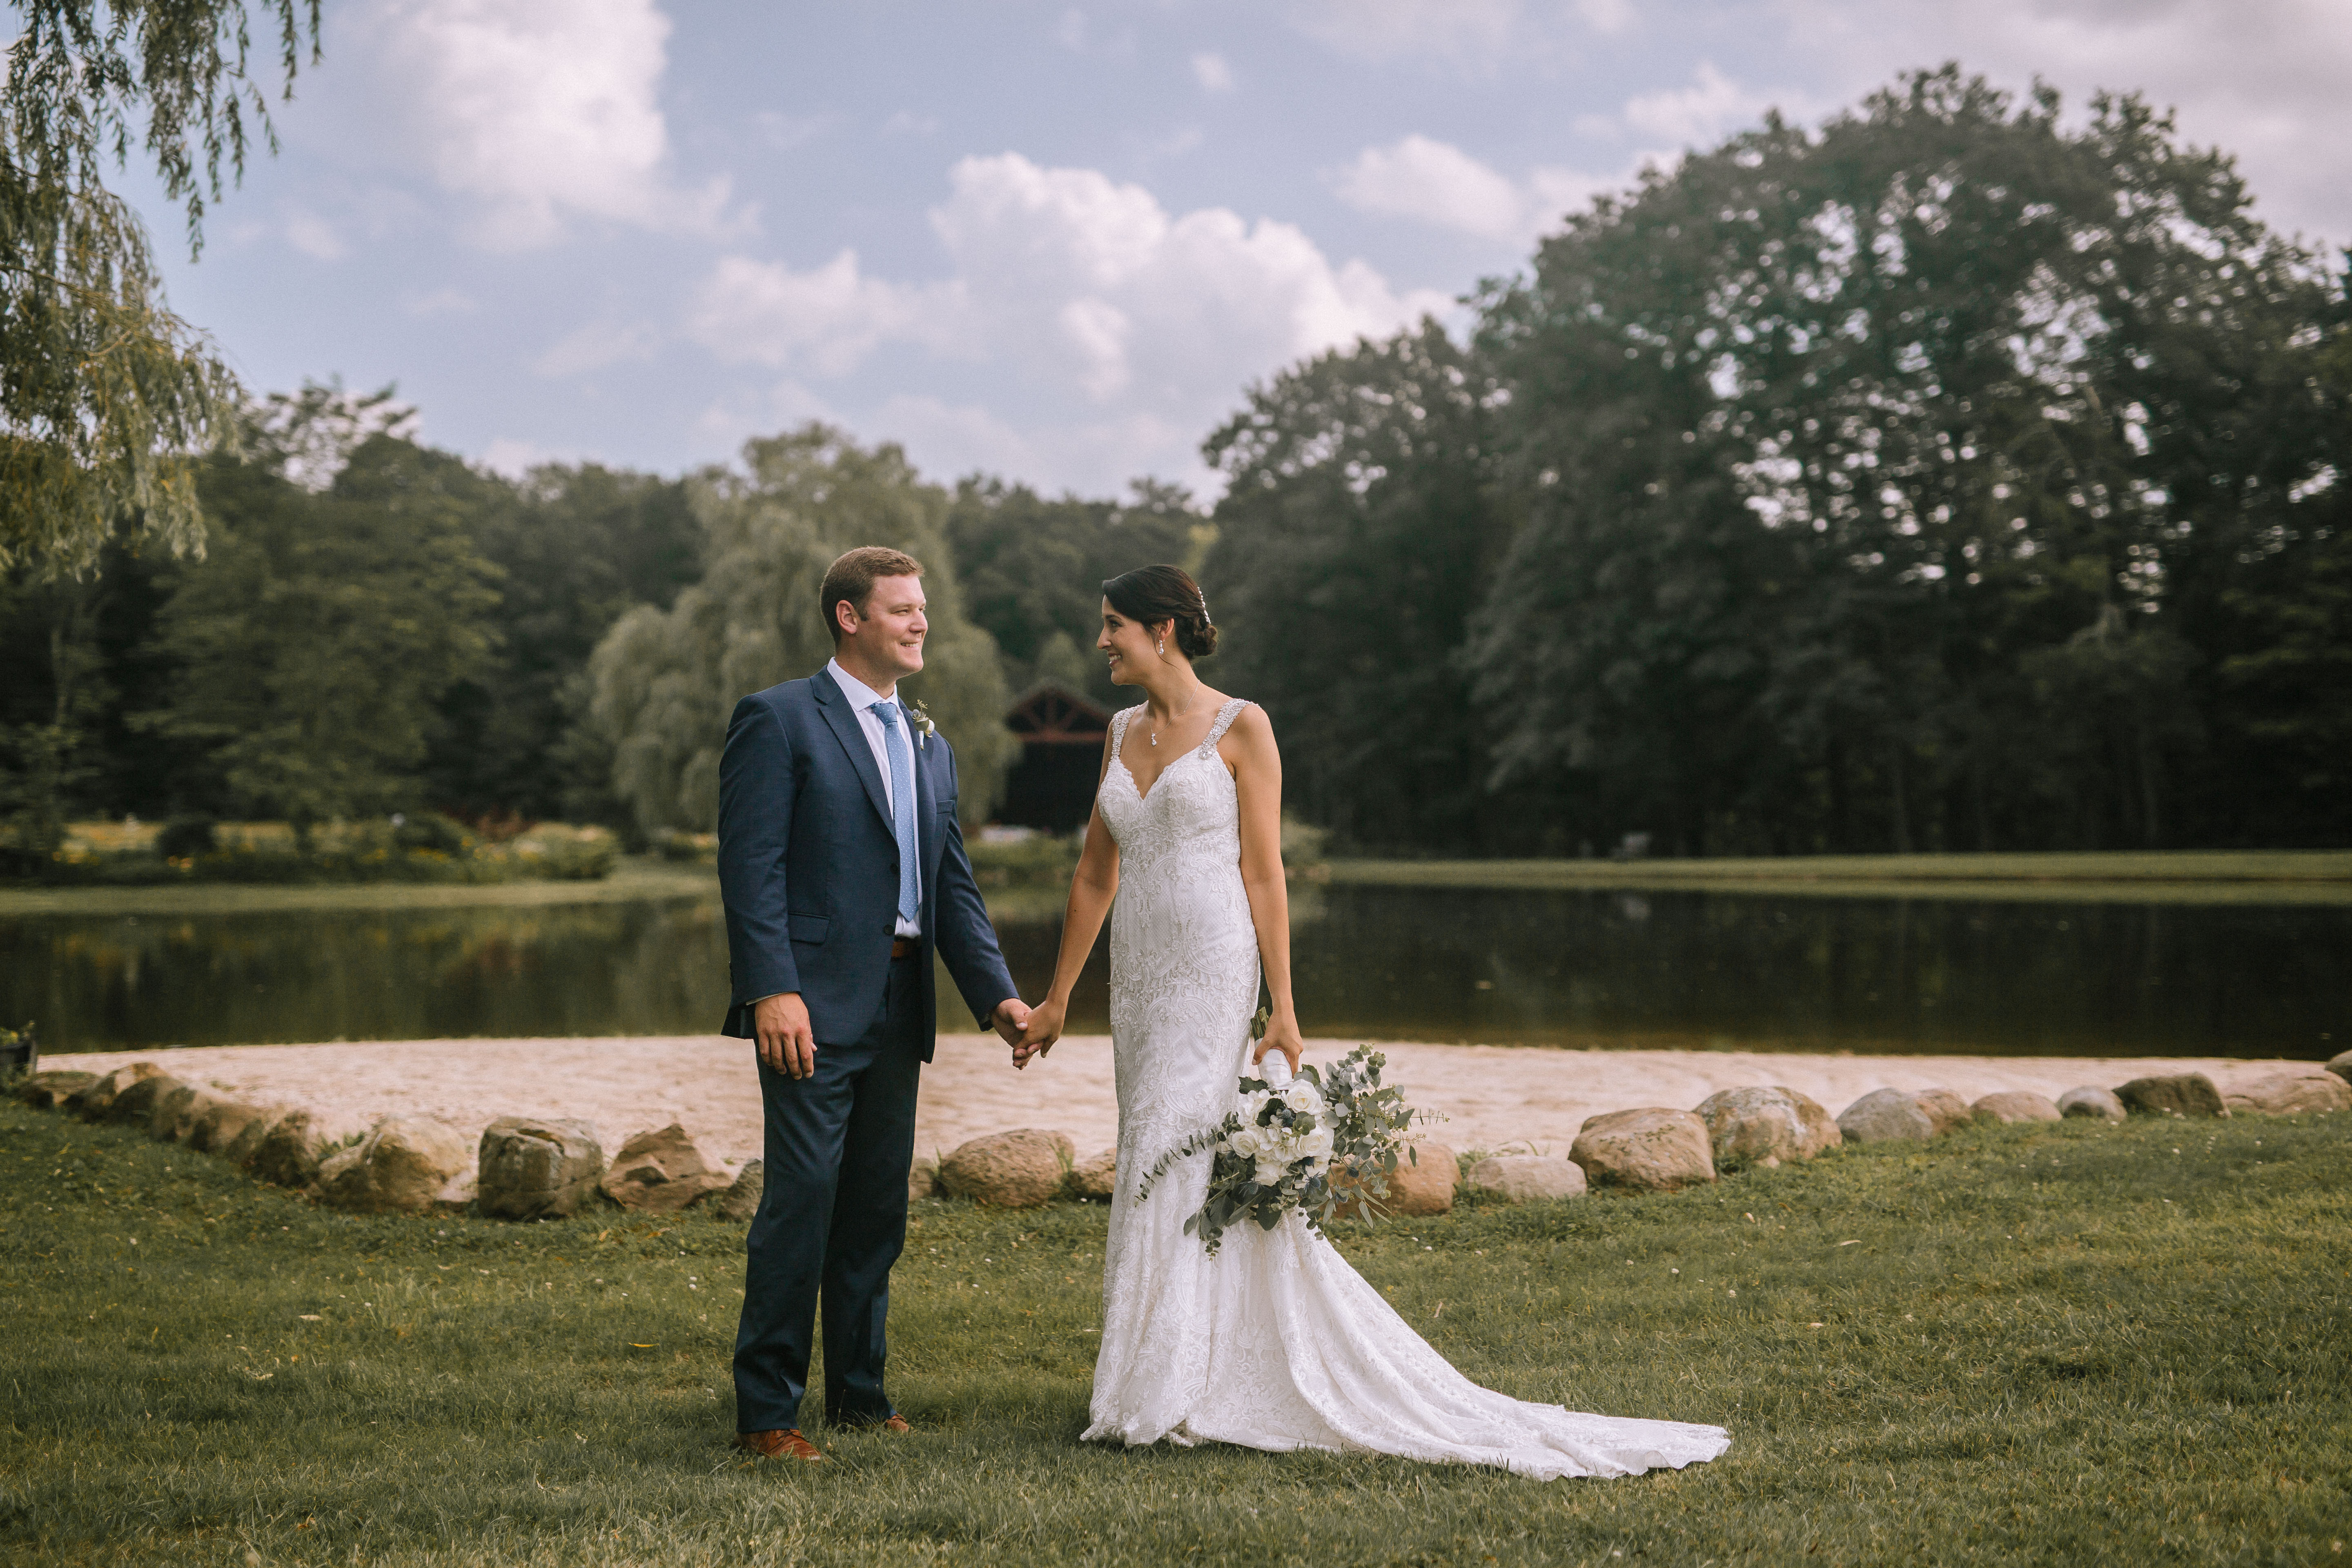 Mr. & Mrs. Wojciechowicz - Meadow Ridge Events Wedding